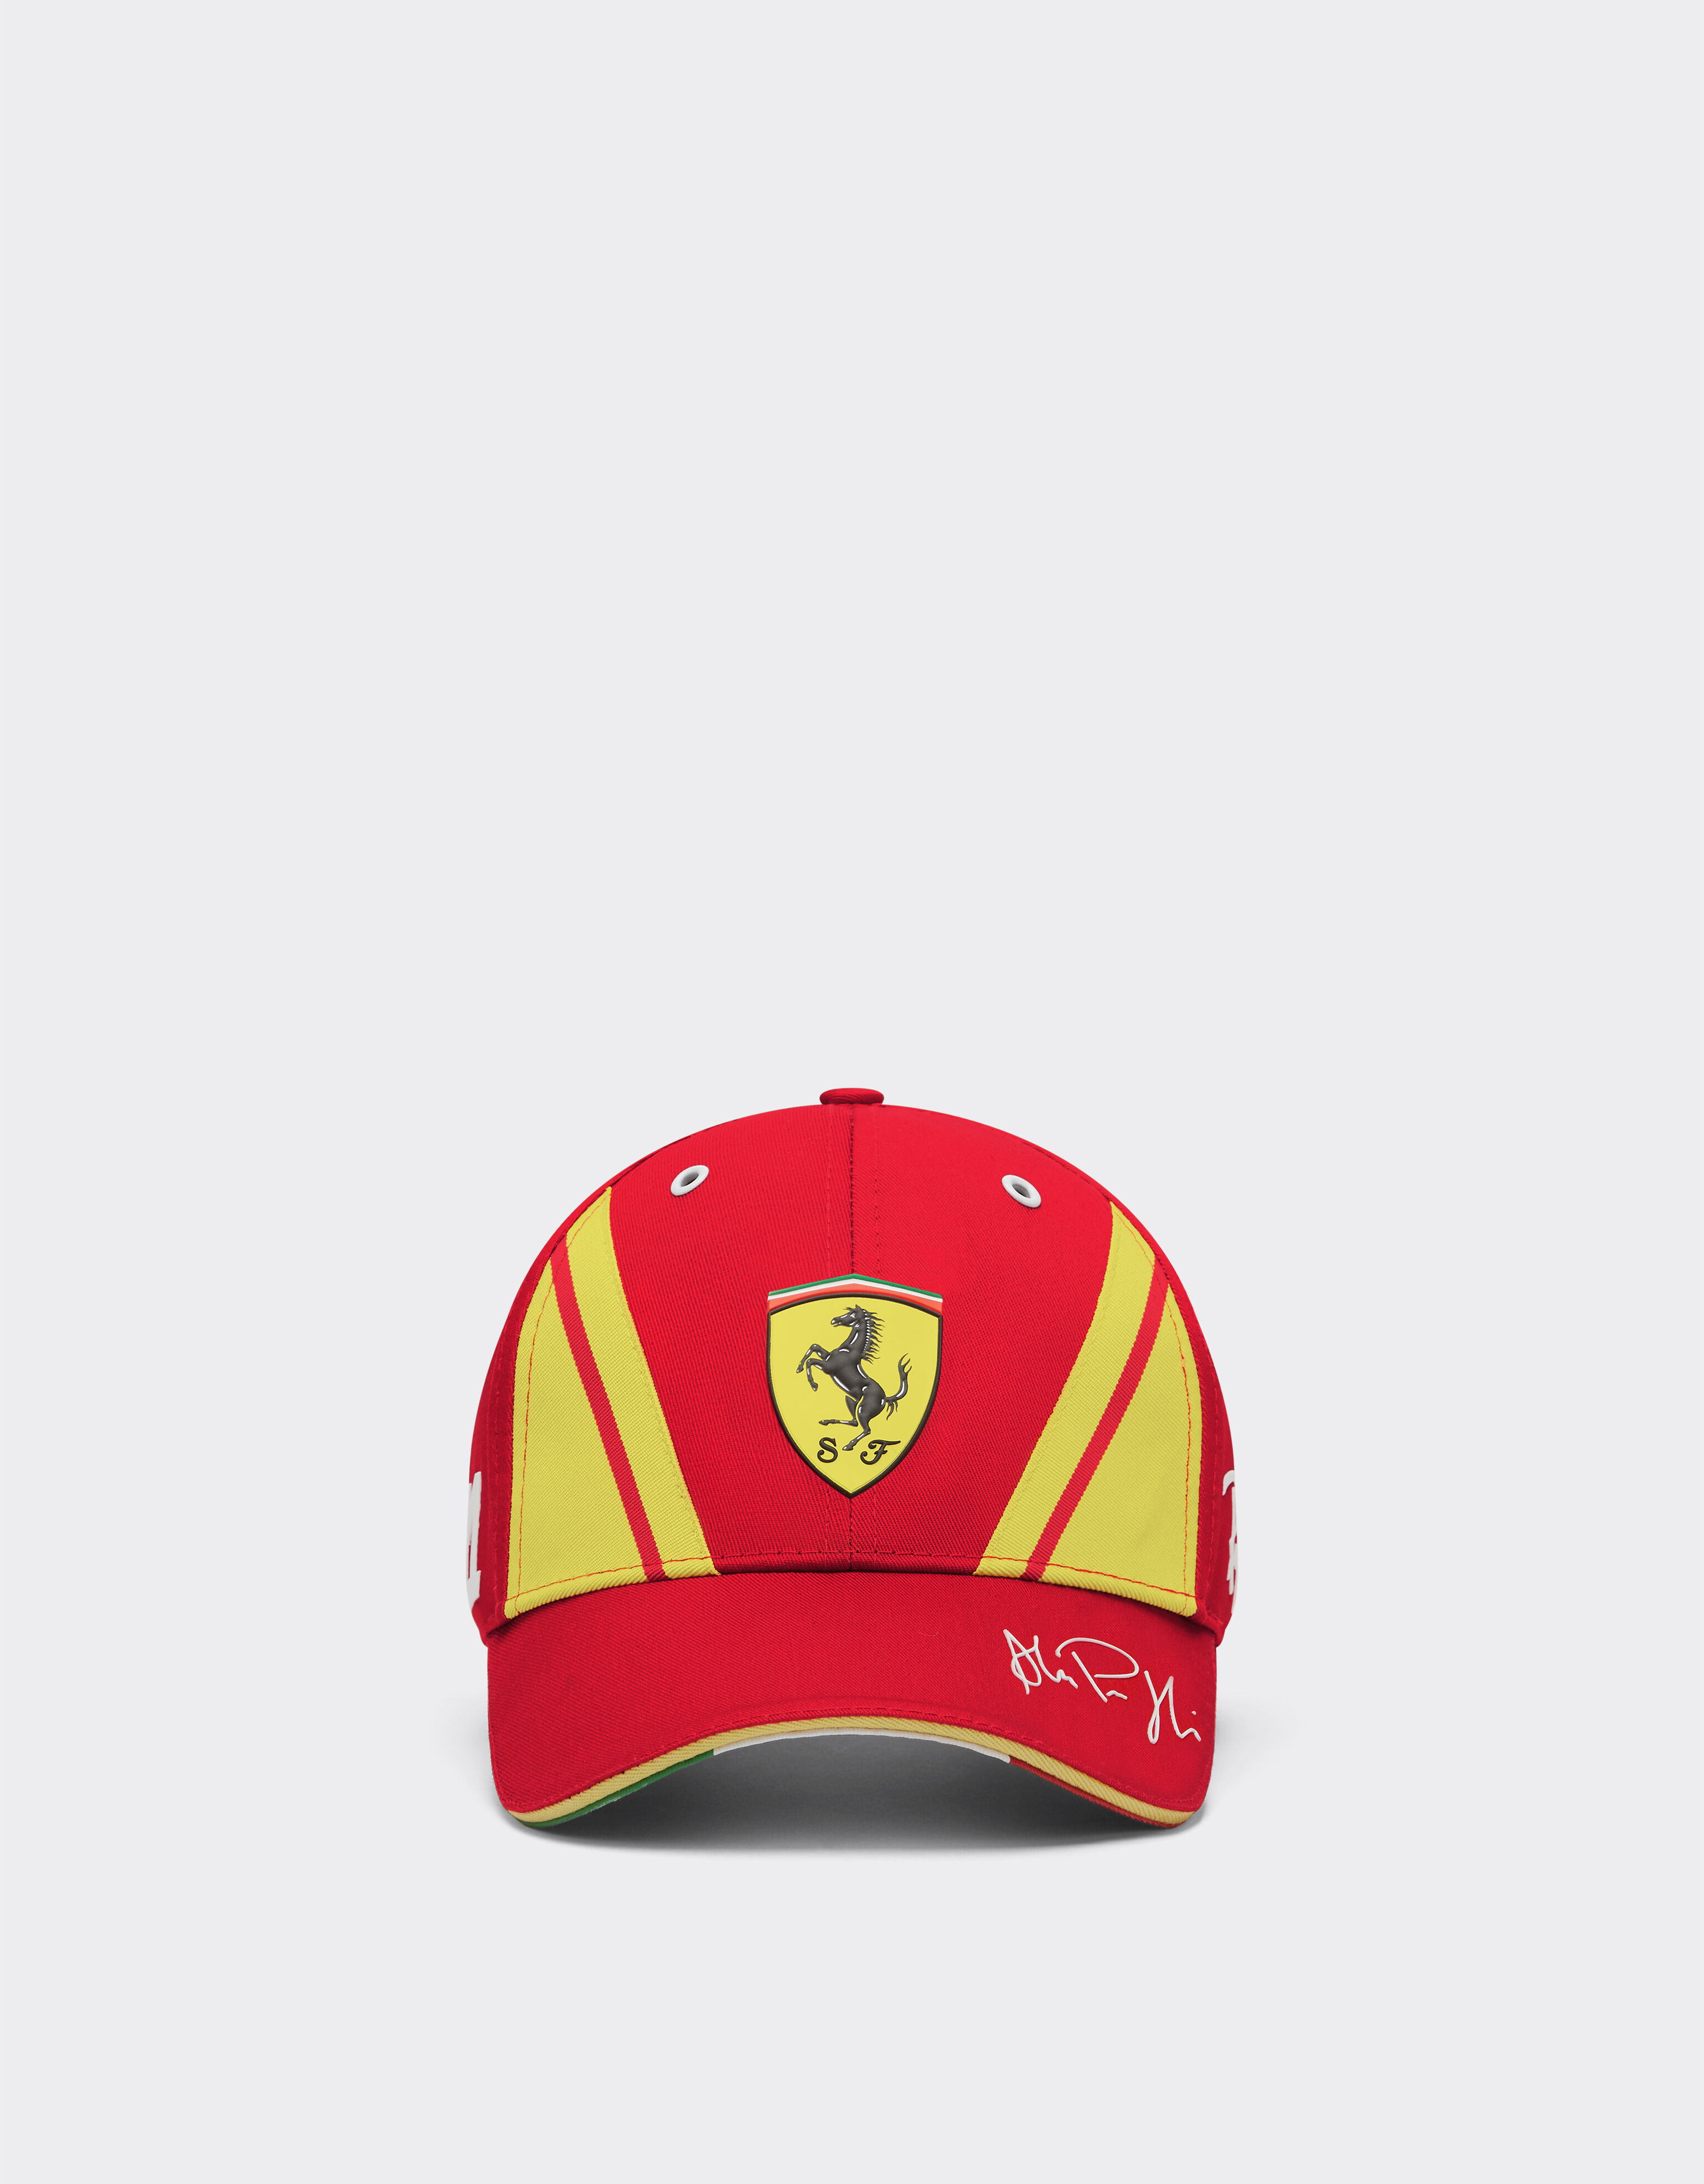 ${brand} Gorra Guidi Ferrari Hypercar - Edición limitada ${colorDescription} ${masterID}